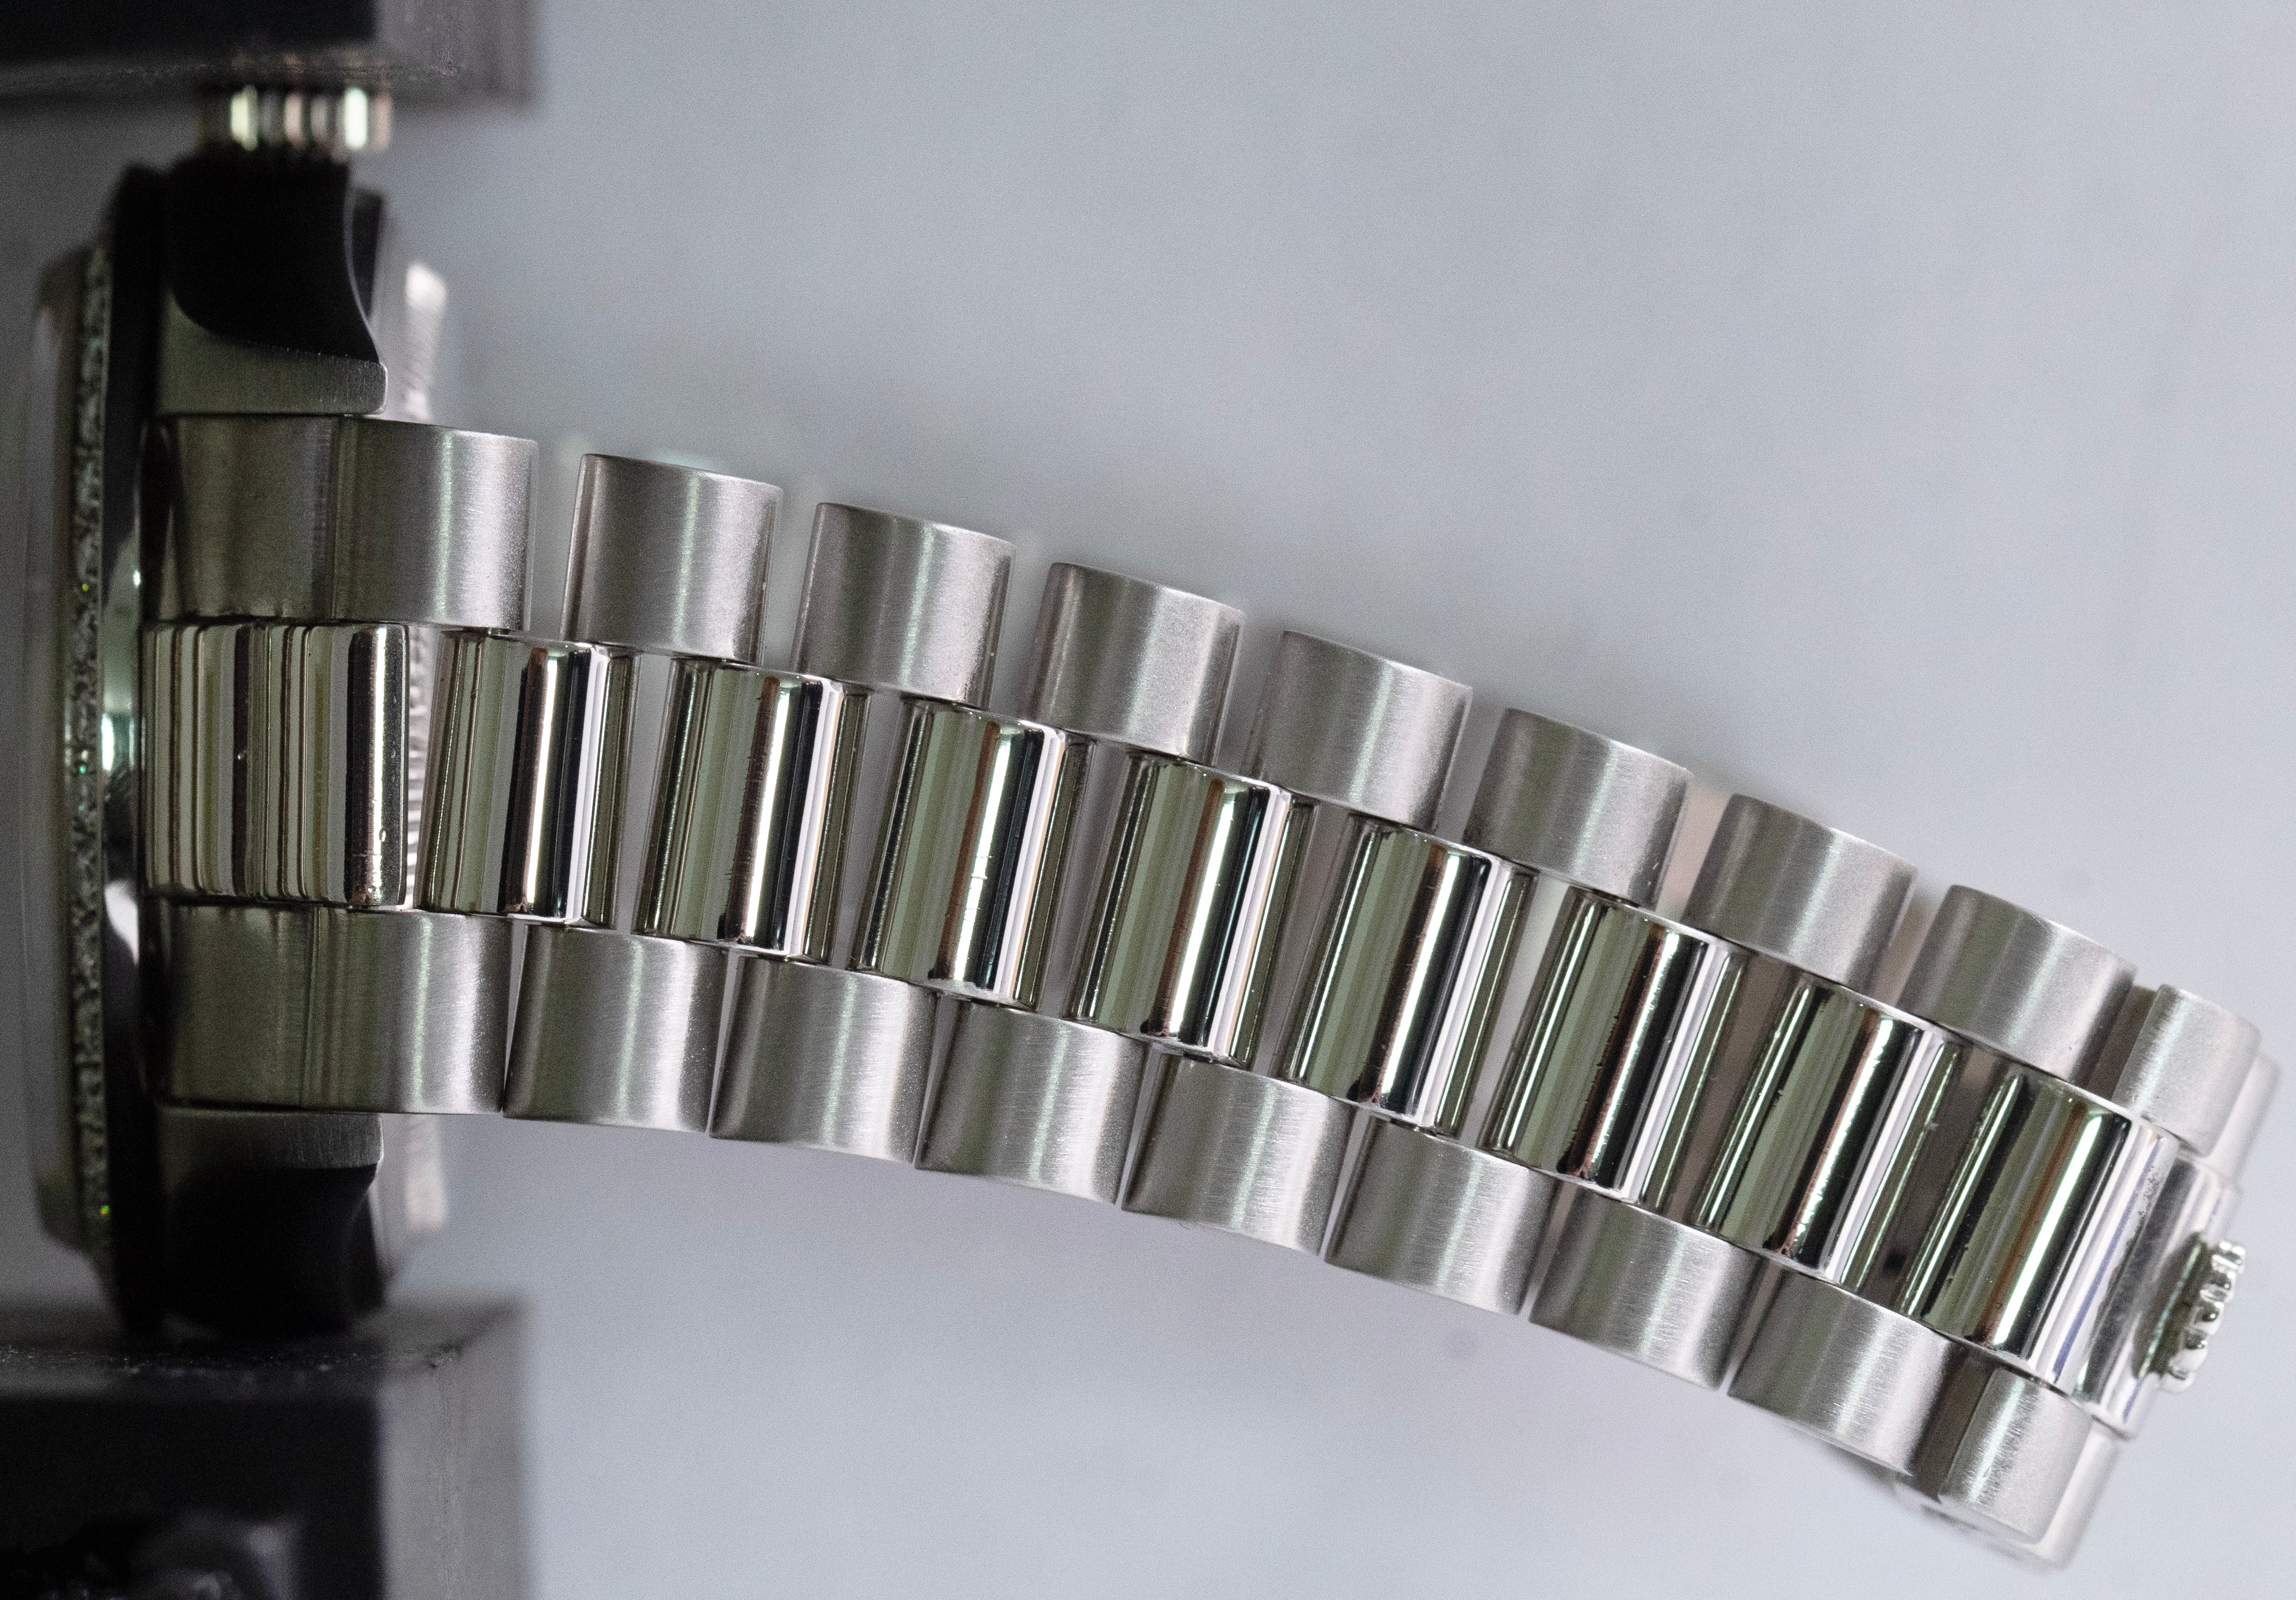 Rolex Day-Date President FACTORY DIAMOND Bezel 36mm 950 Platinum Watch 18046 A